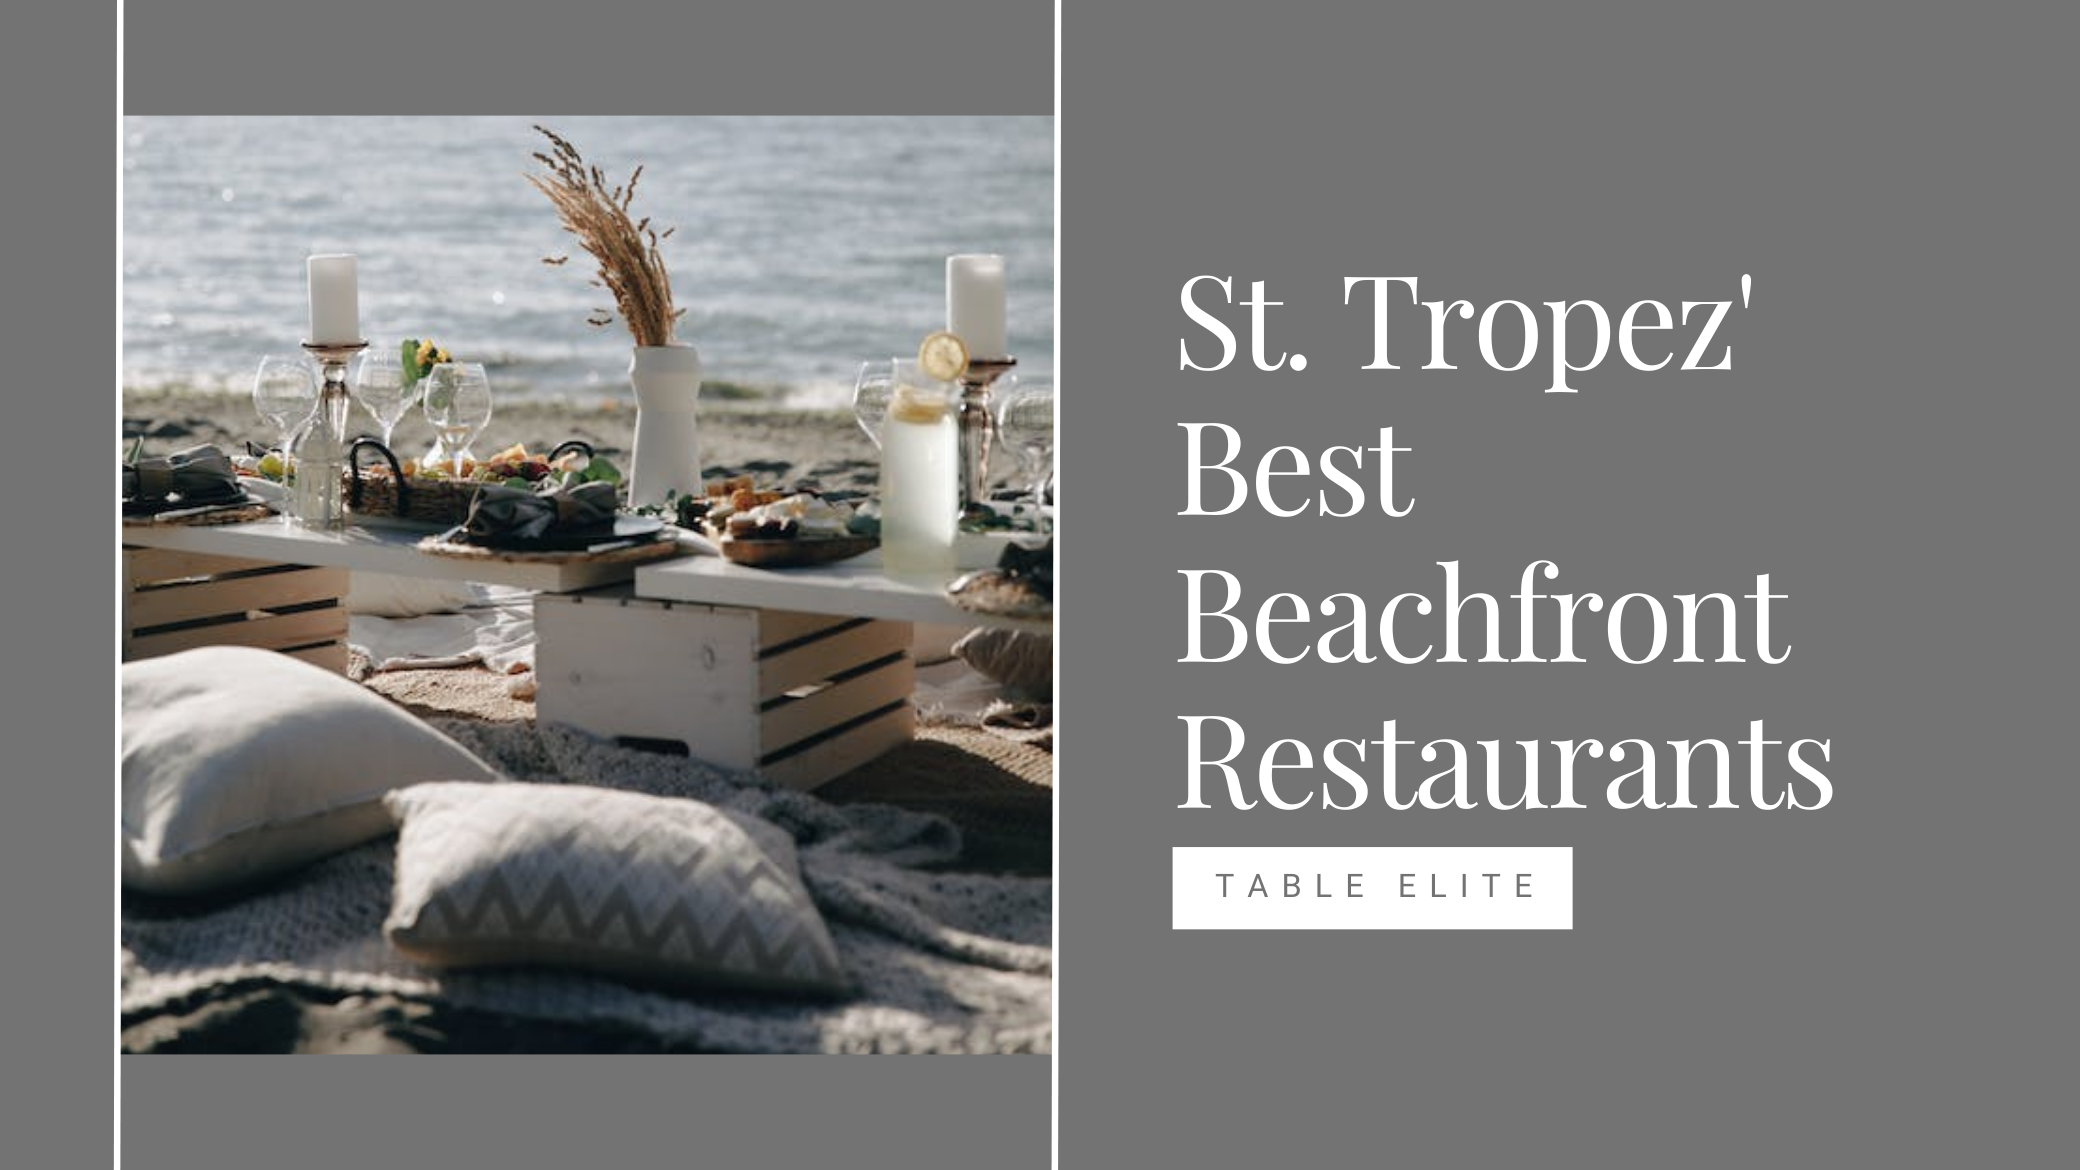 St. Tropez best beachfront restaurants